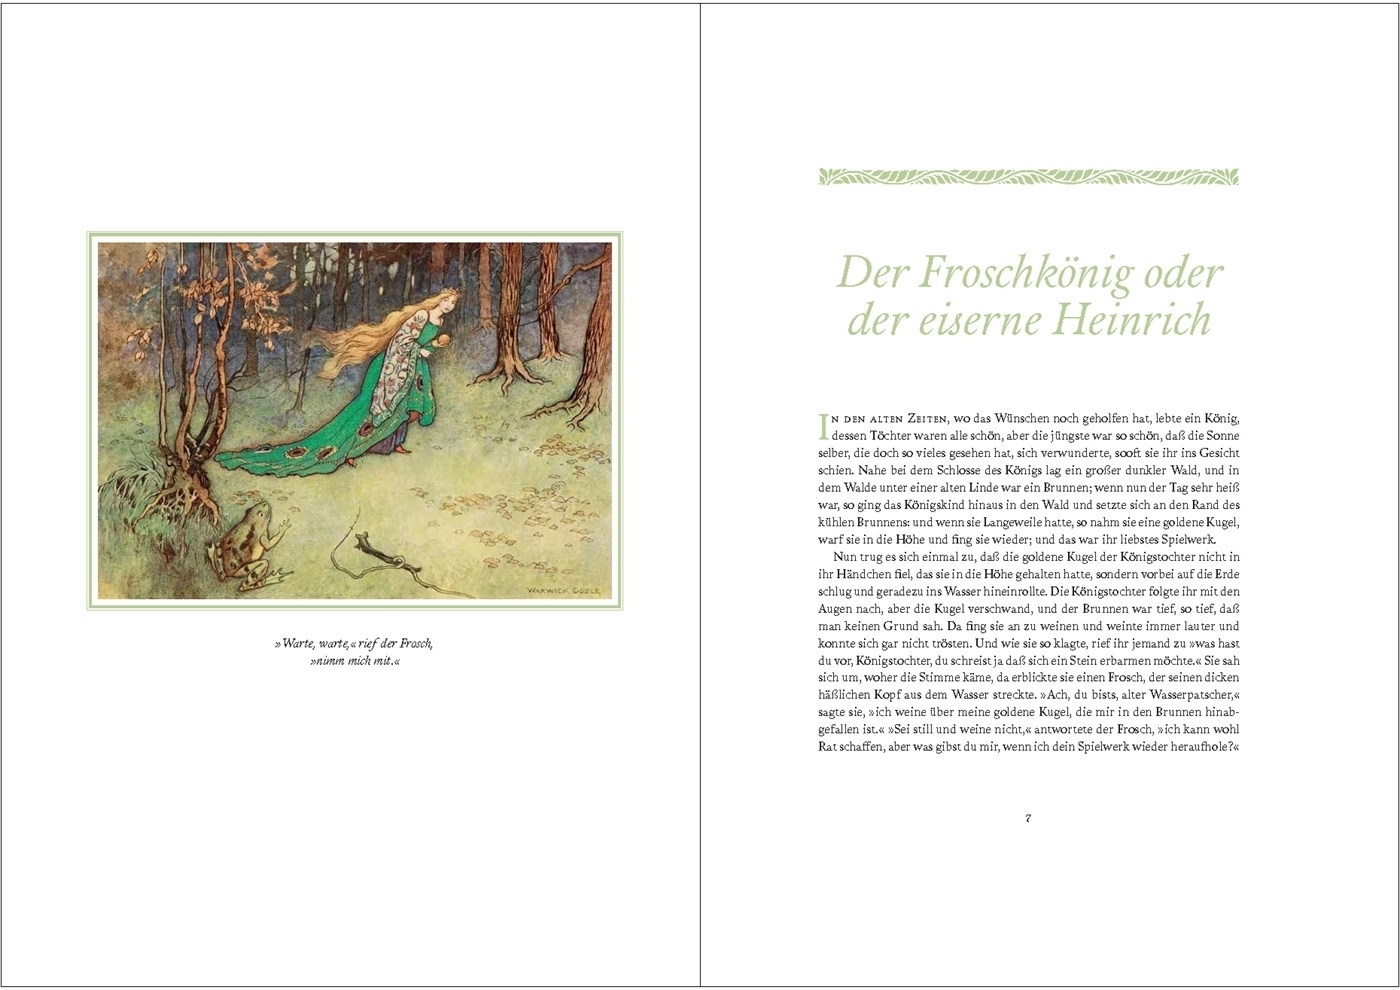 Bild: 9783534275069 | Die Märchen der Welt | Buch | Deutsch | 2022 | WBG Edition